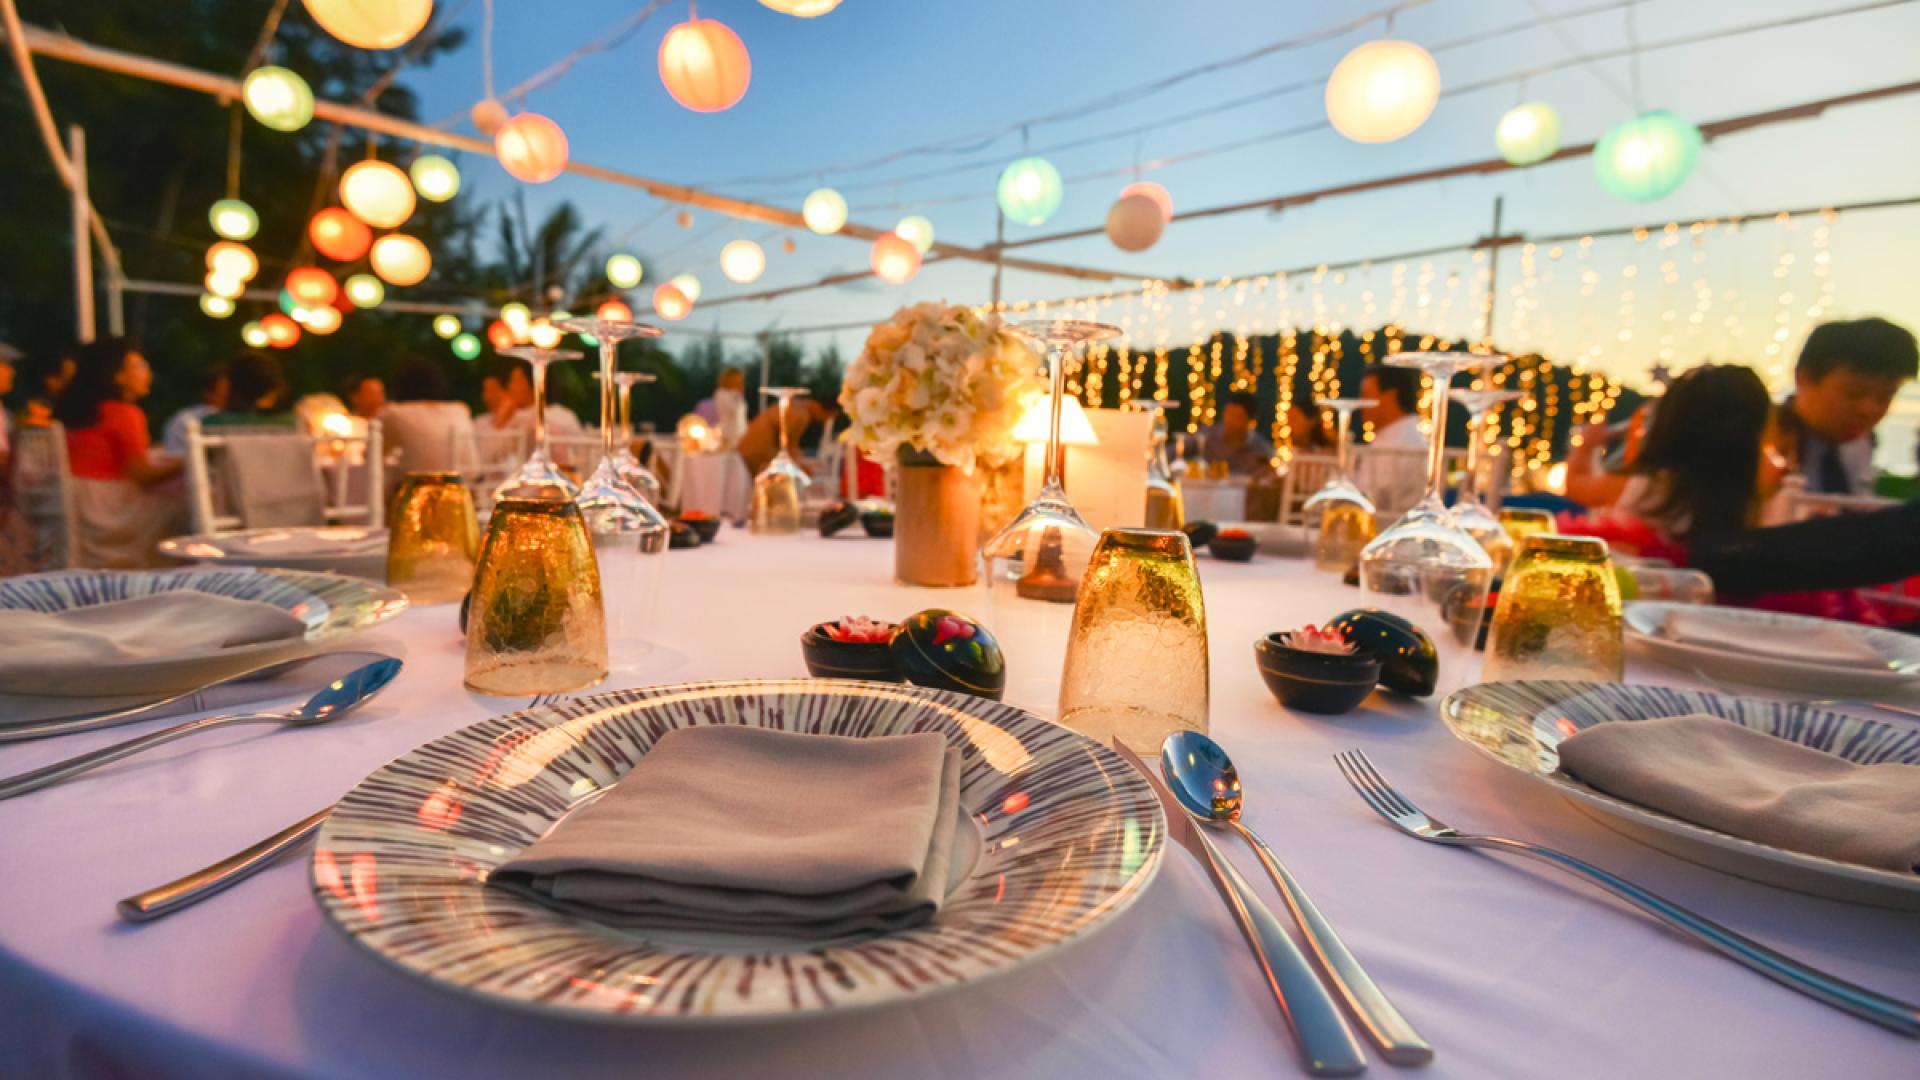 Cena all'aperto con luci colorate e tavola elegantemente apparecchiata.